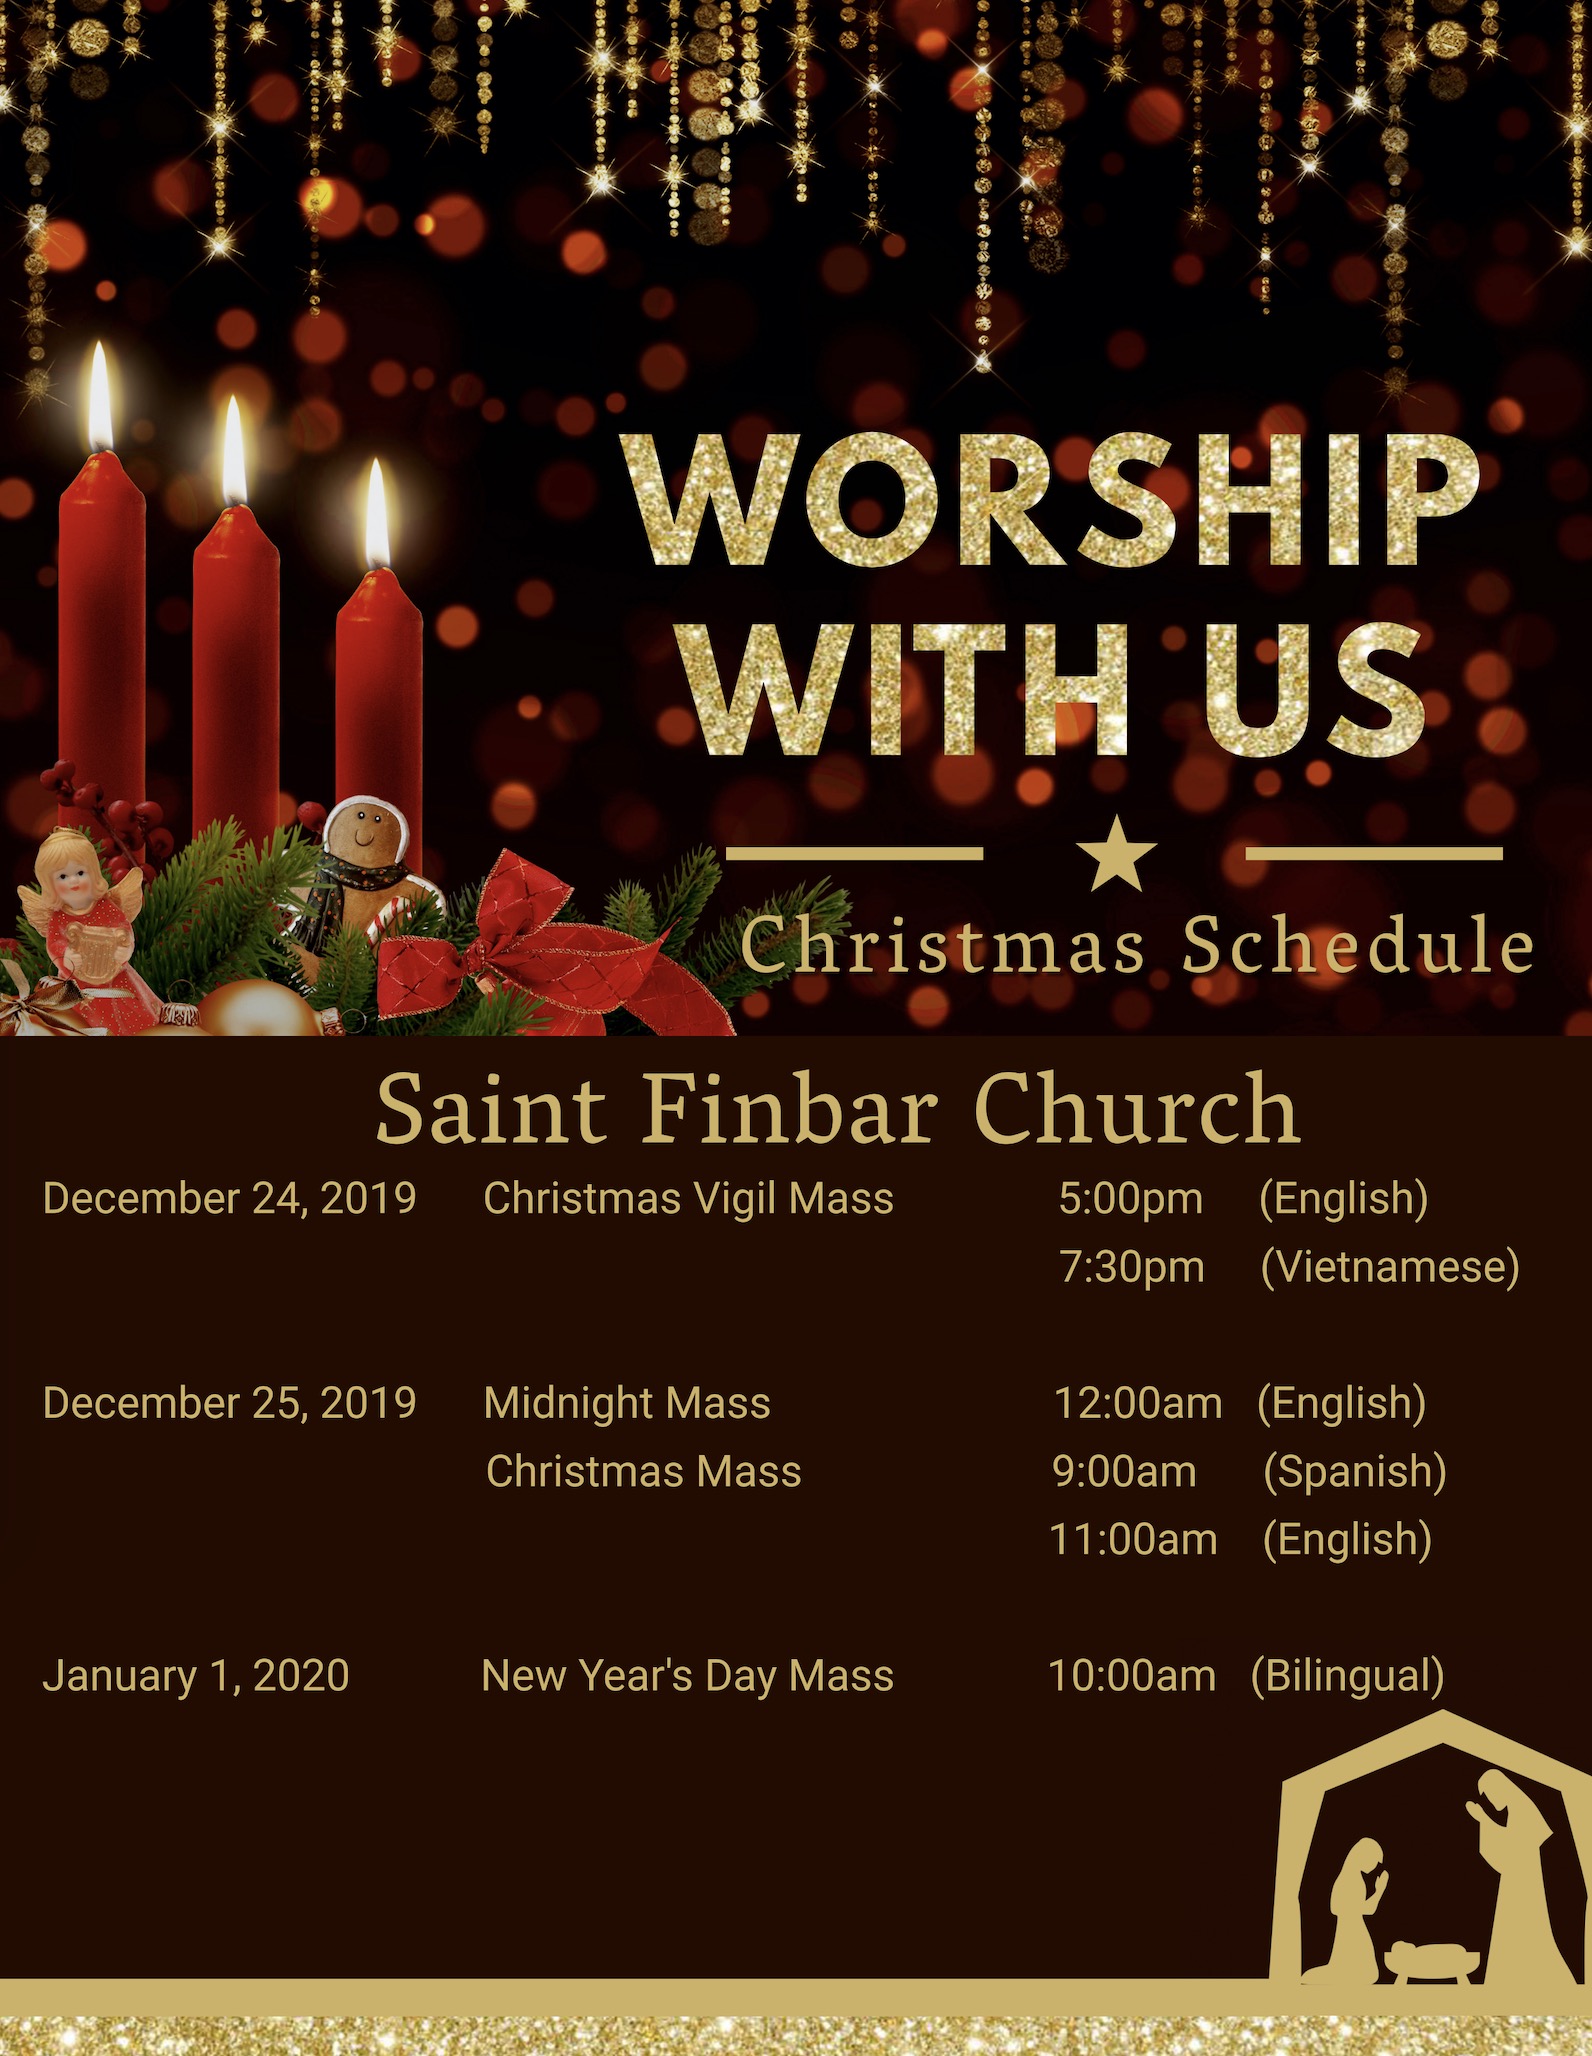 Christmas Mass Schedule – Saint Finbar